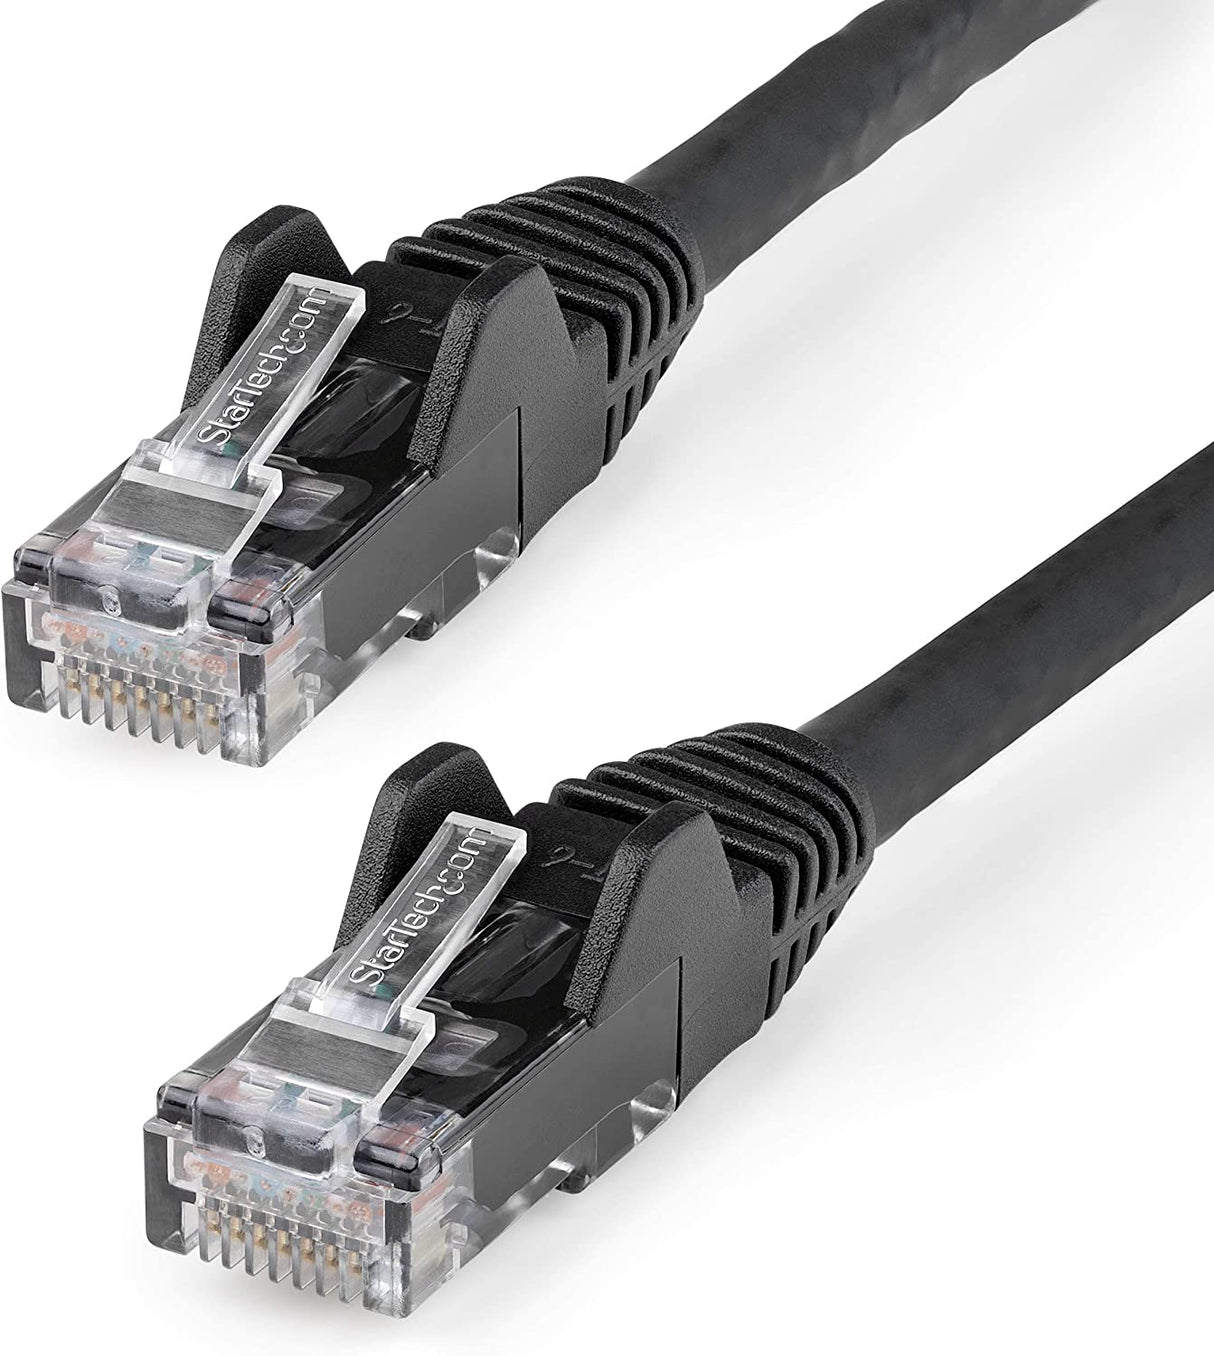 StarTech.com 30ft (9m) CAT6 Ethernet Cable - LSZH (Low Smoke Zero Halogen) - 10 Gigabit 650MHz 100W PoE RJ45 UTP Network Patch Cord Snagless w/Strain Relief - Black CAT 6, ETL Verified (N6LPATCH30BK) 30 ft Black